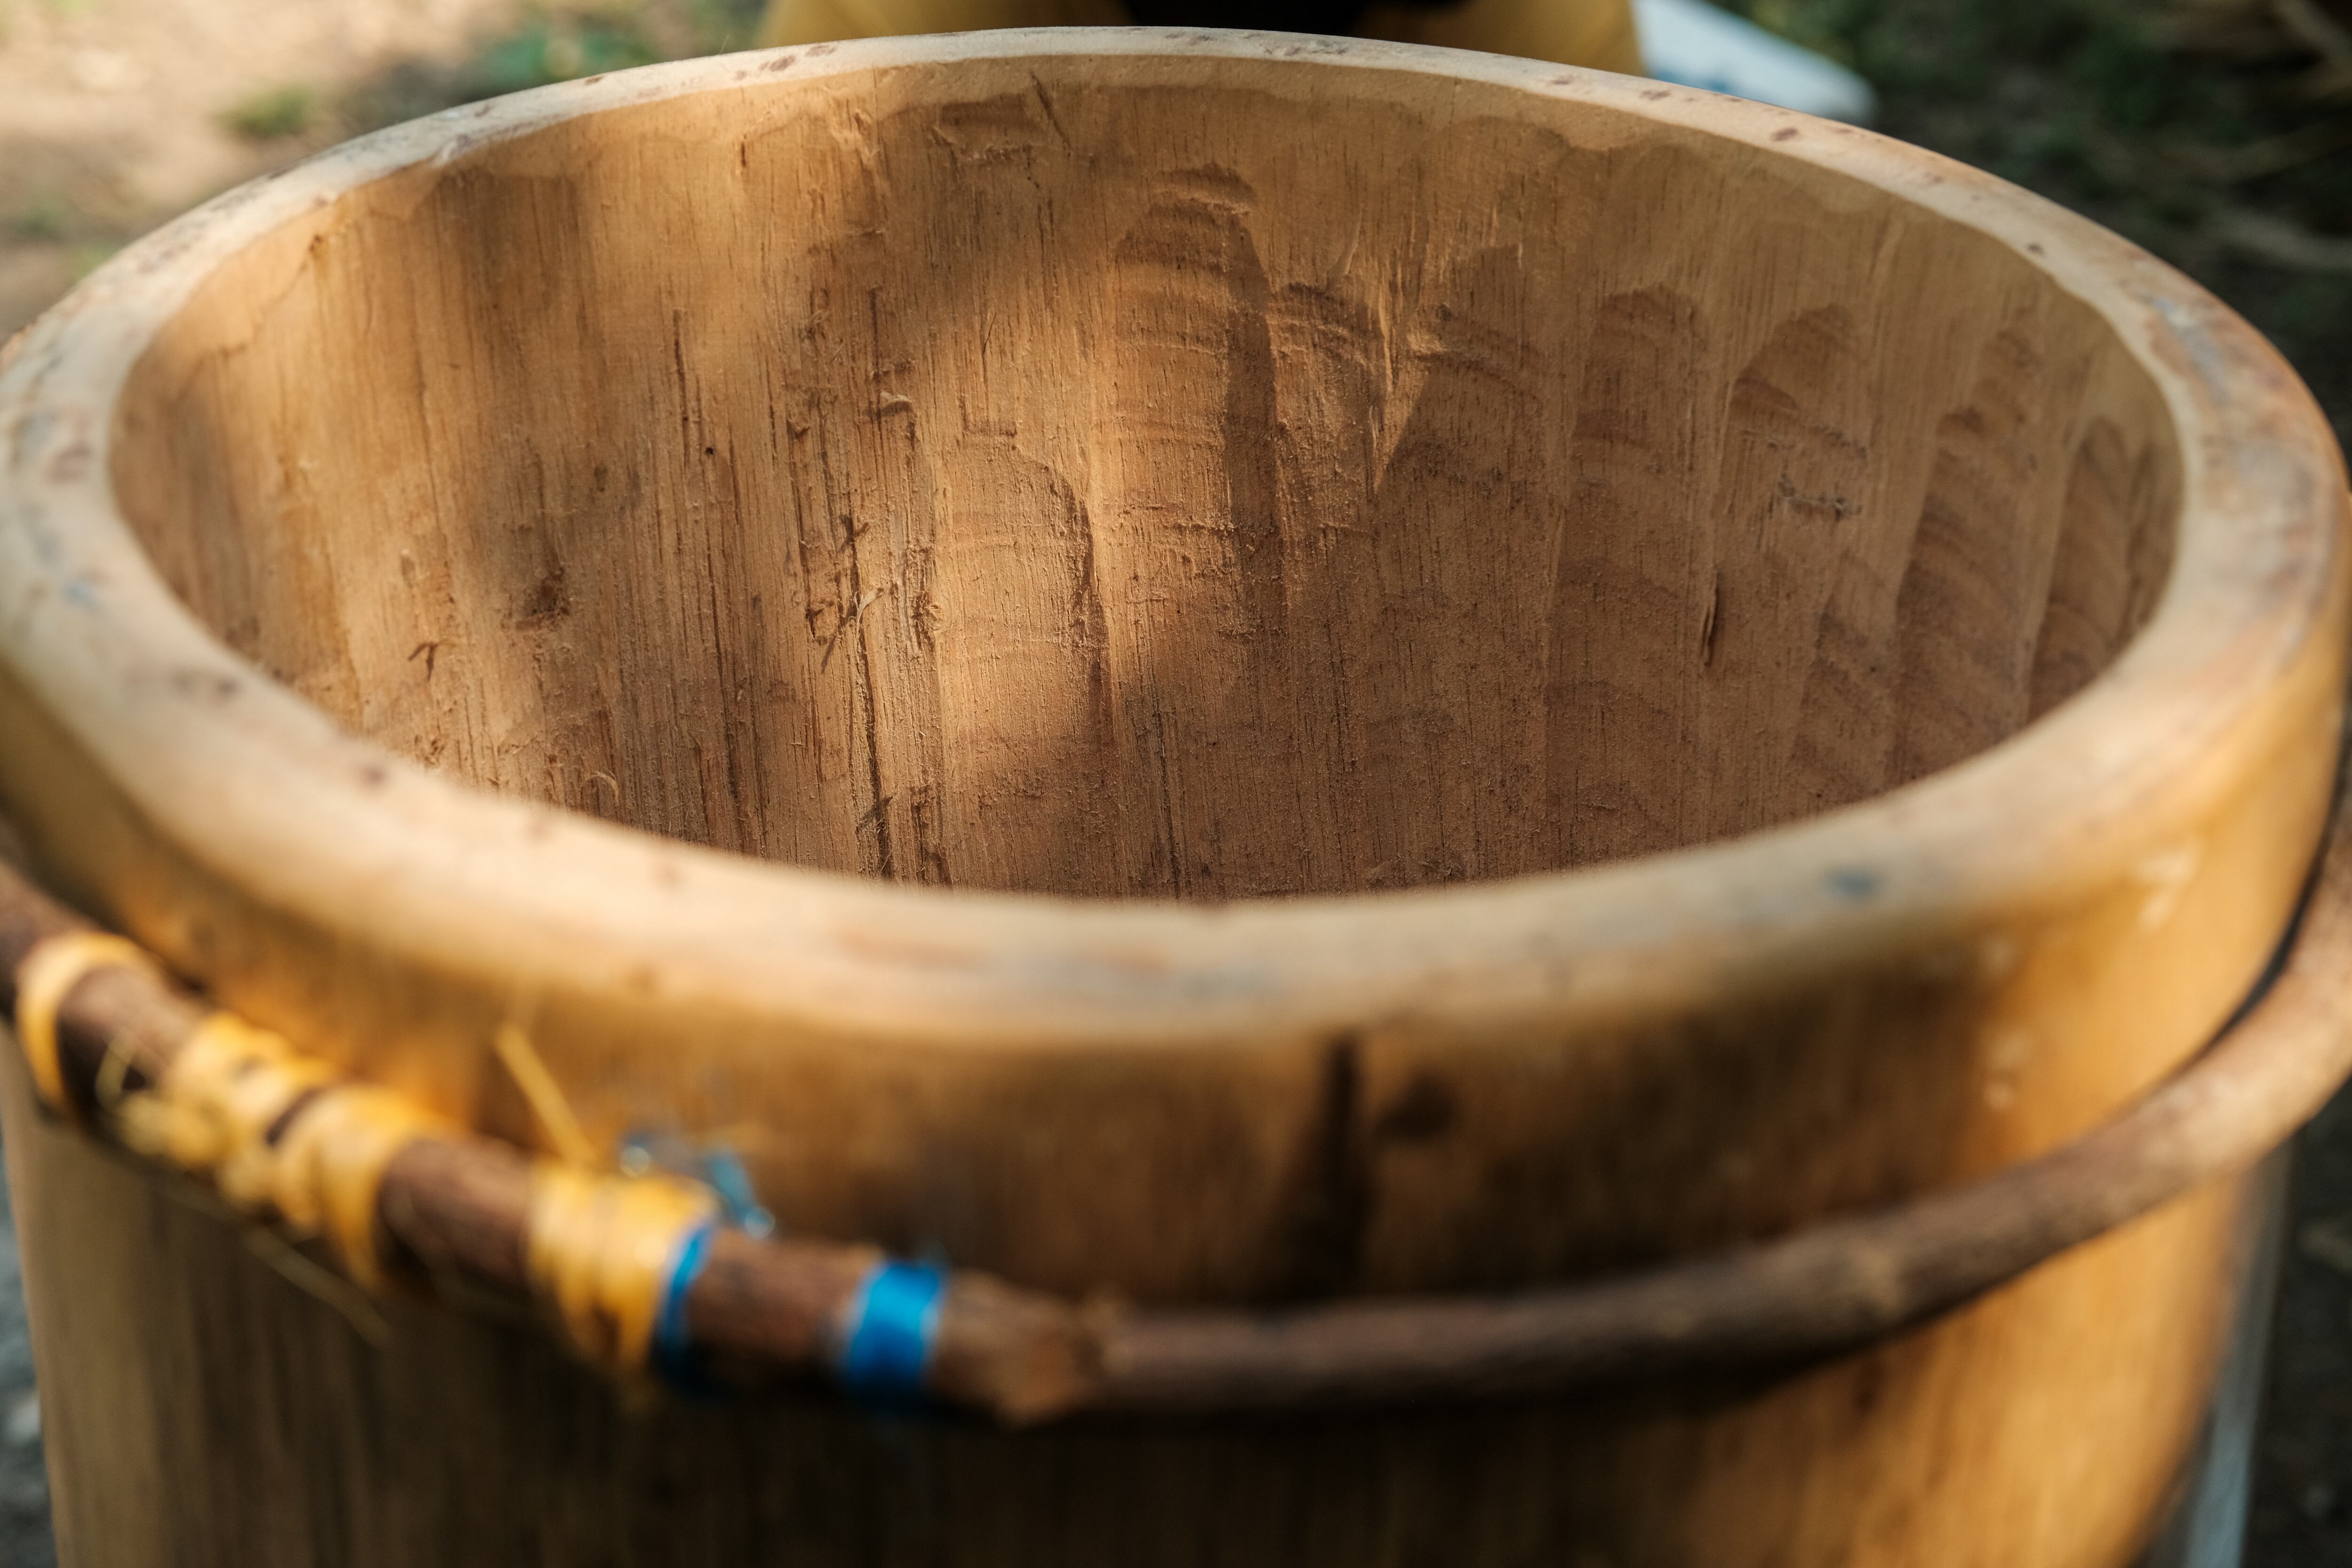 El proceso de elaboración de un tambor Pechiche, una de las percusiones tradicionales de la música afrocolombiana del Caribe.